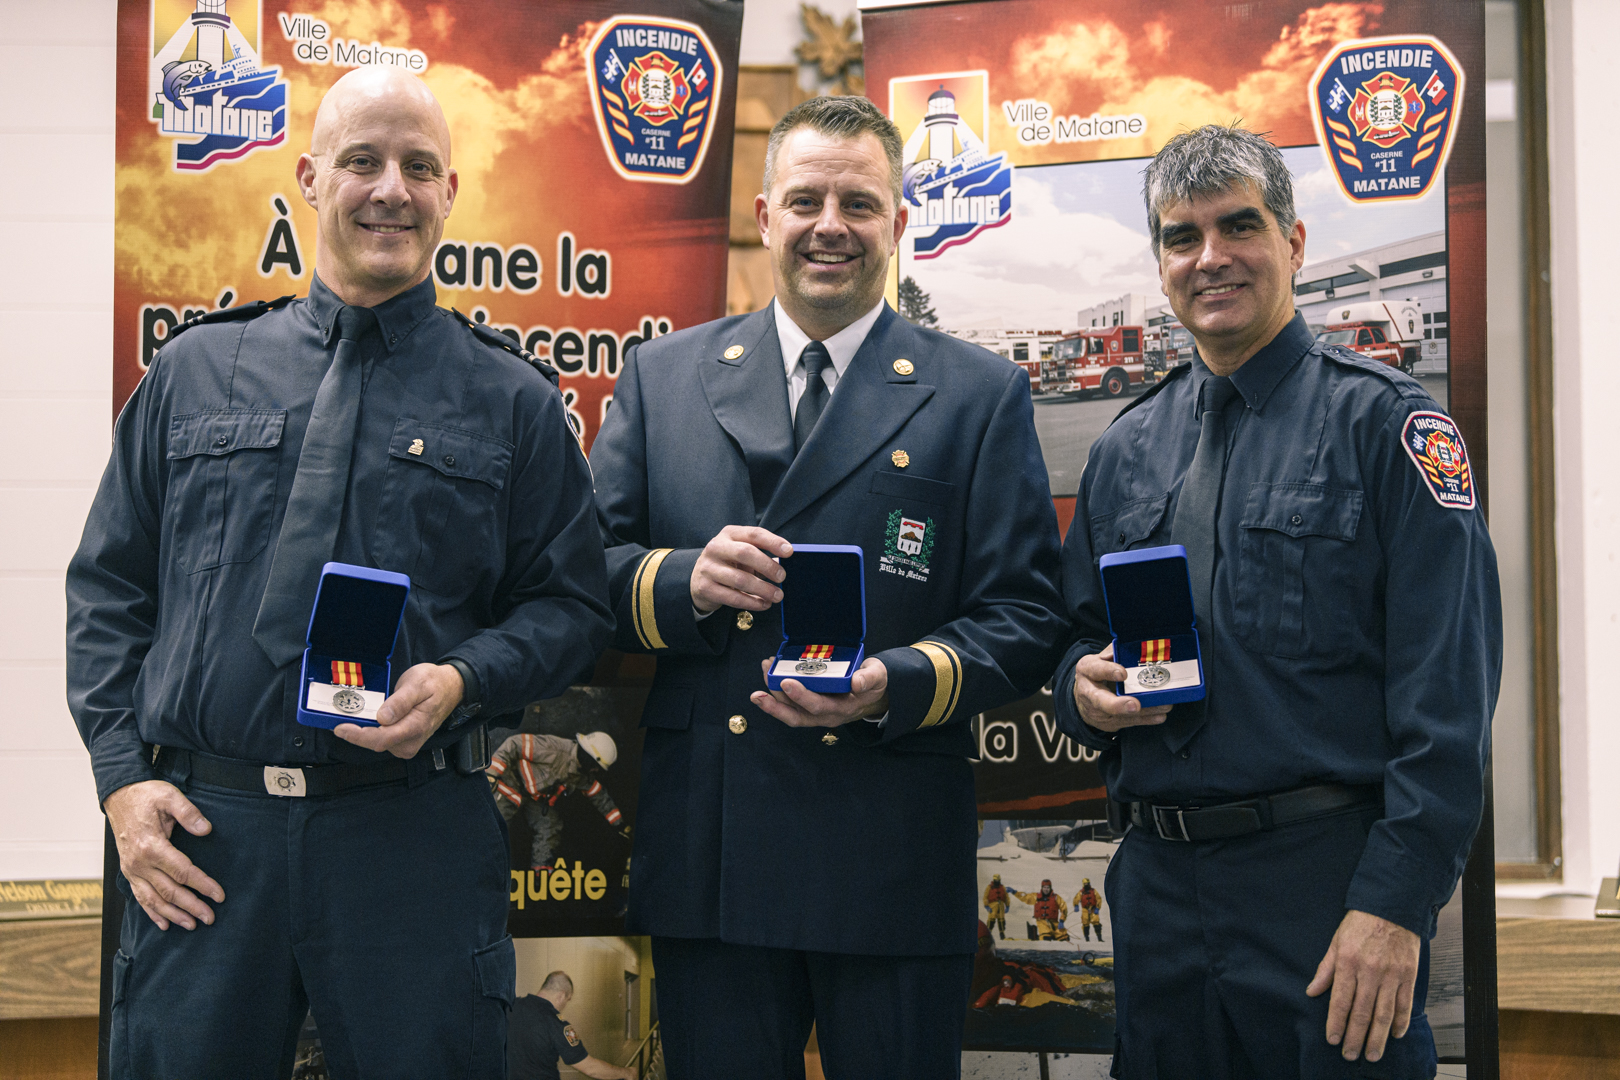 Le certificat de 20 ans de service du Gouverneur général du Canada et la Médaille pour services distingués ont aussi été remis à trois pompiers : messieurs Éric Cyr, Paul Dugré et David Lavoie.